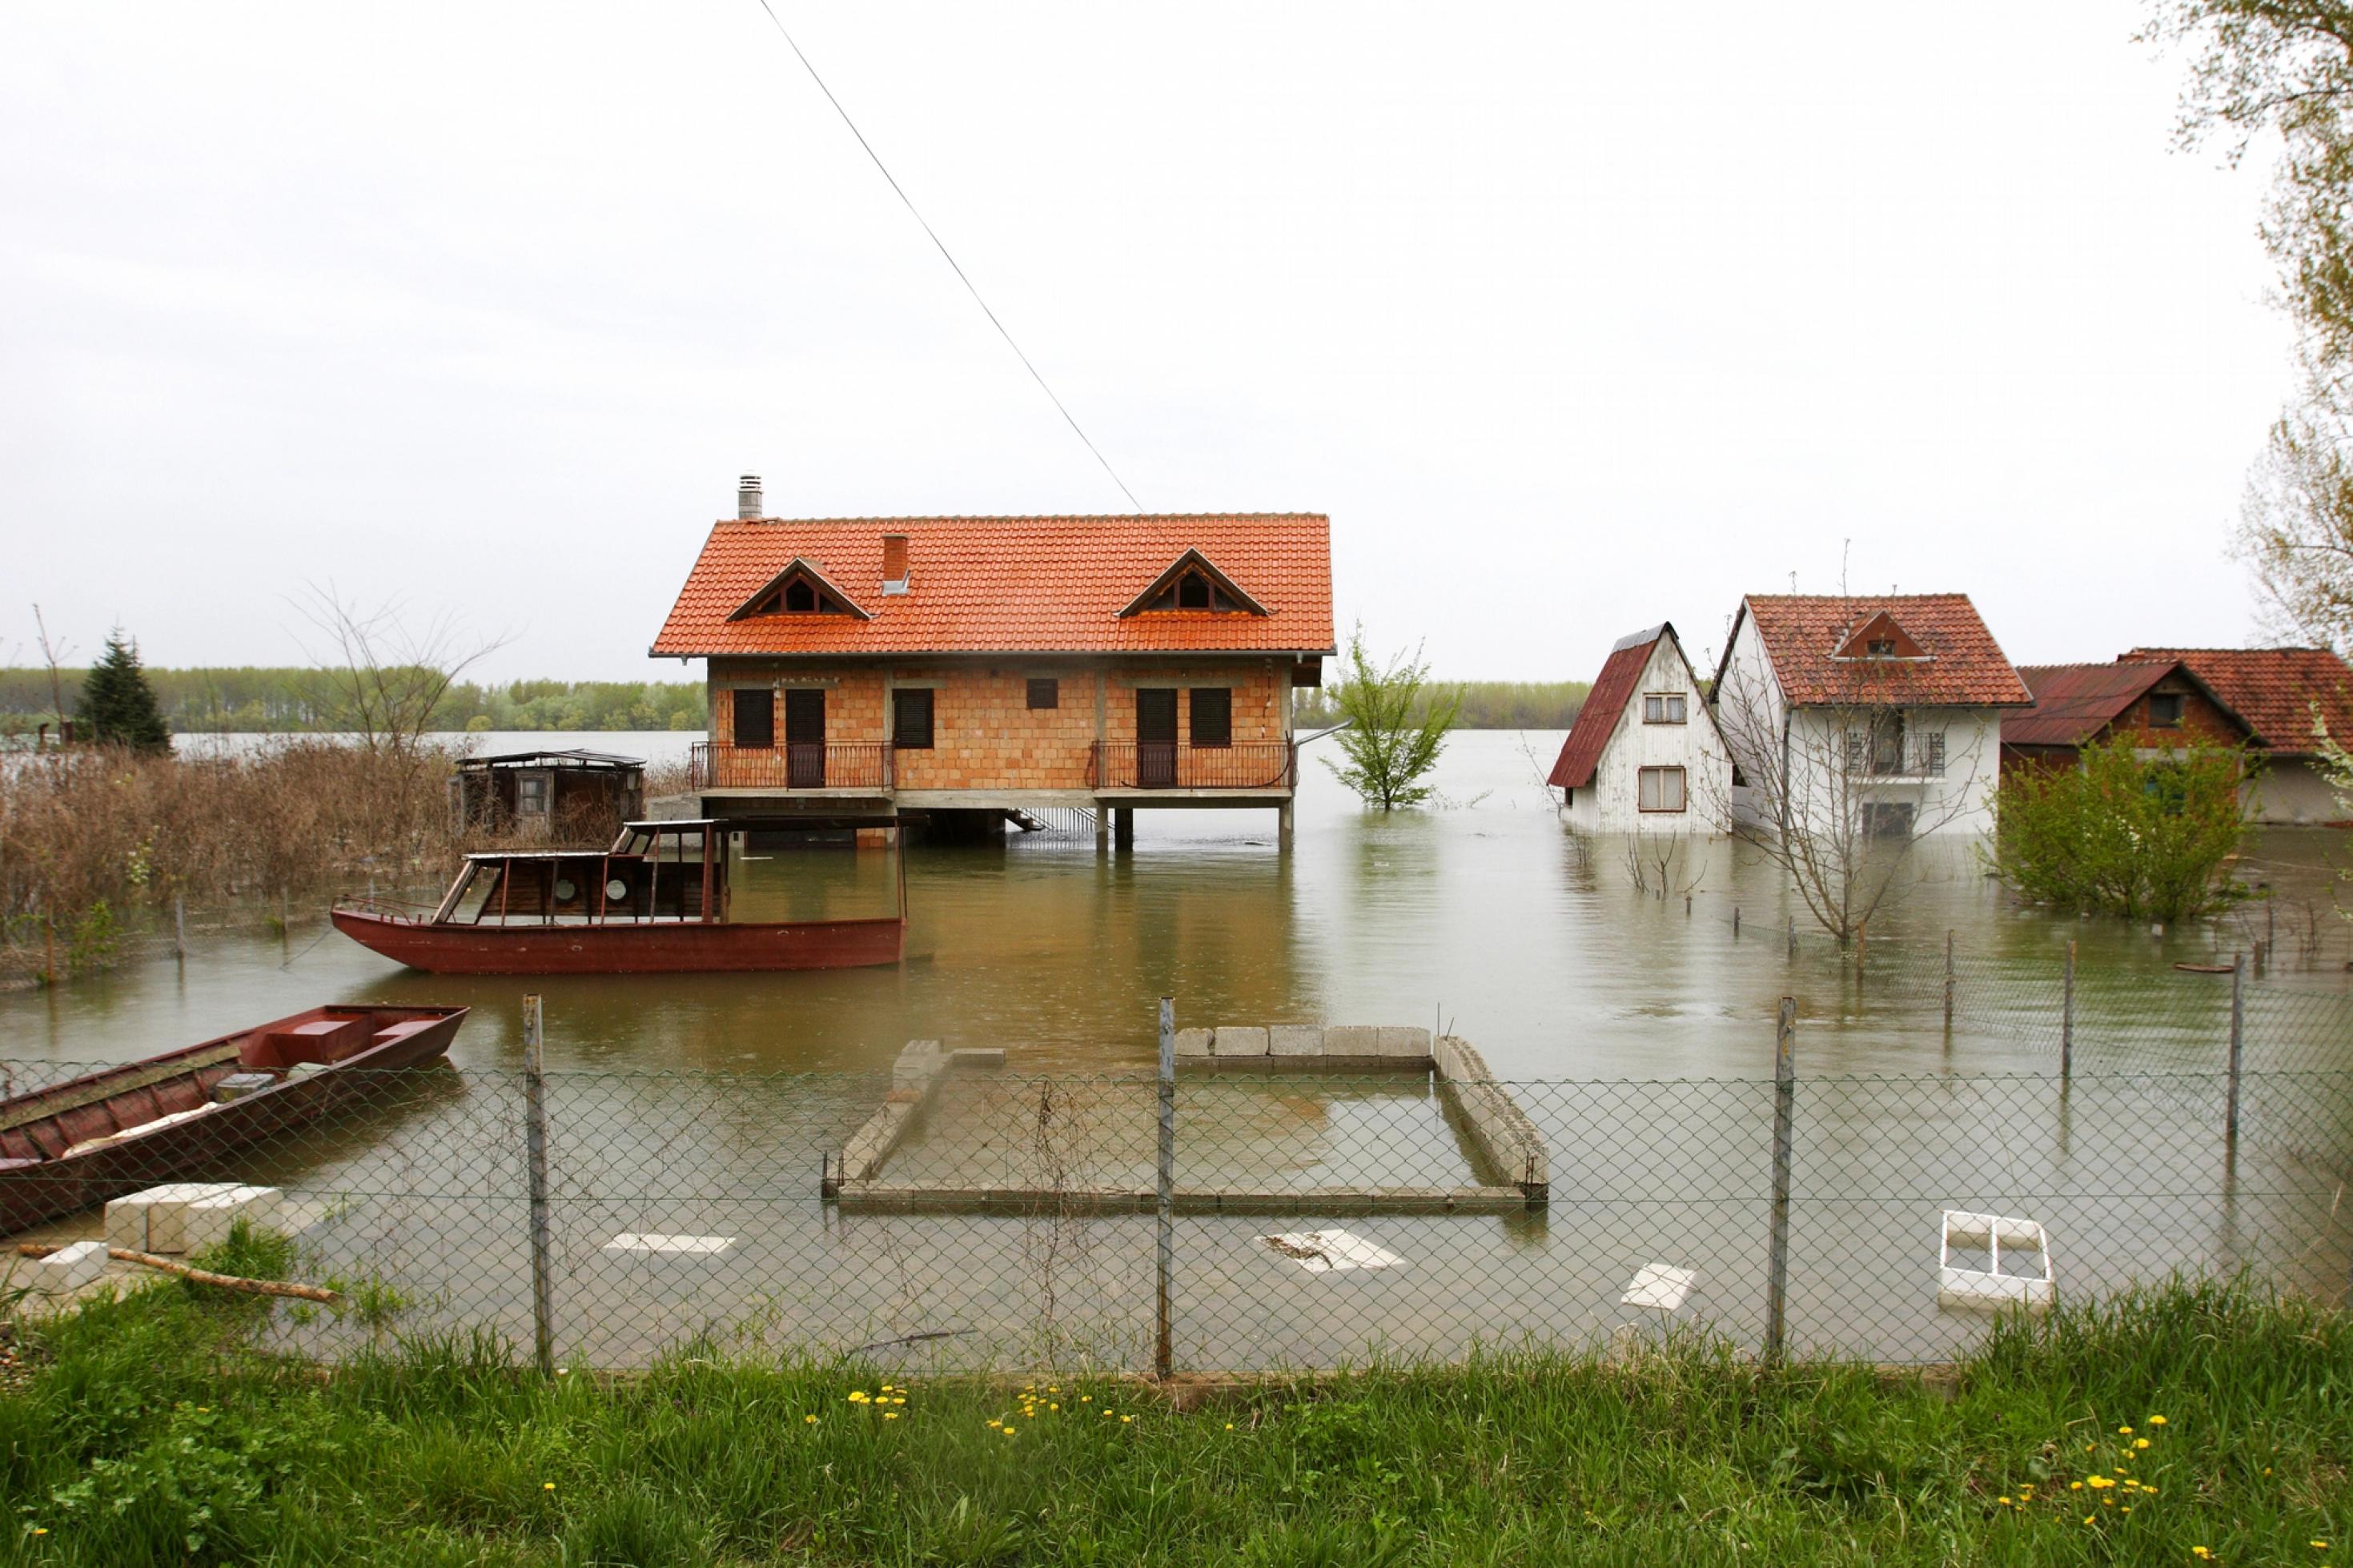 Überschwemmungen können großen Schaden anrichten – rechtzeitige Warnungen können Leben retten.